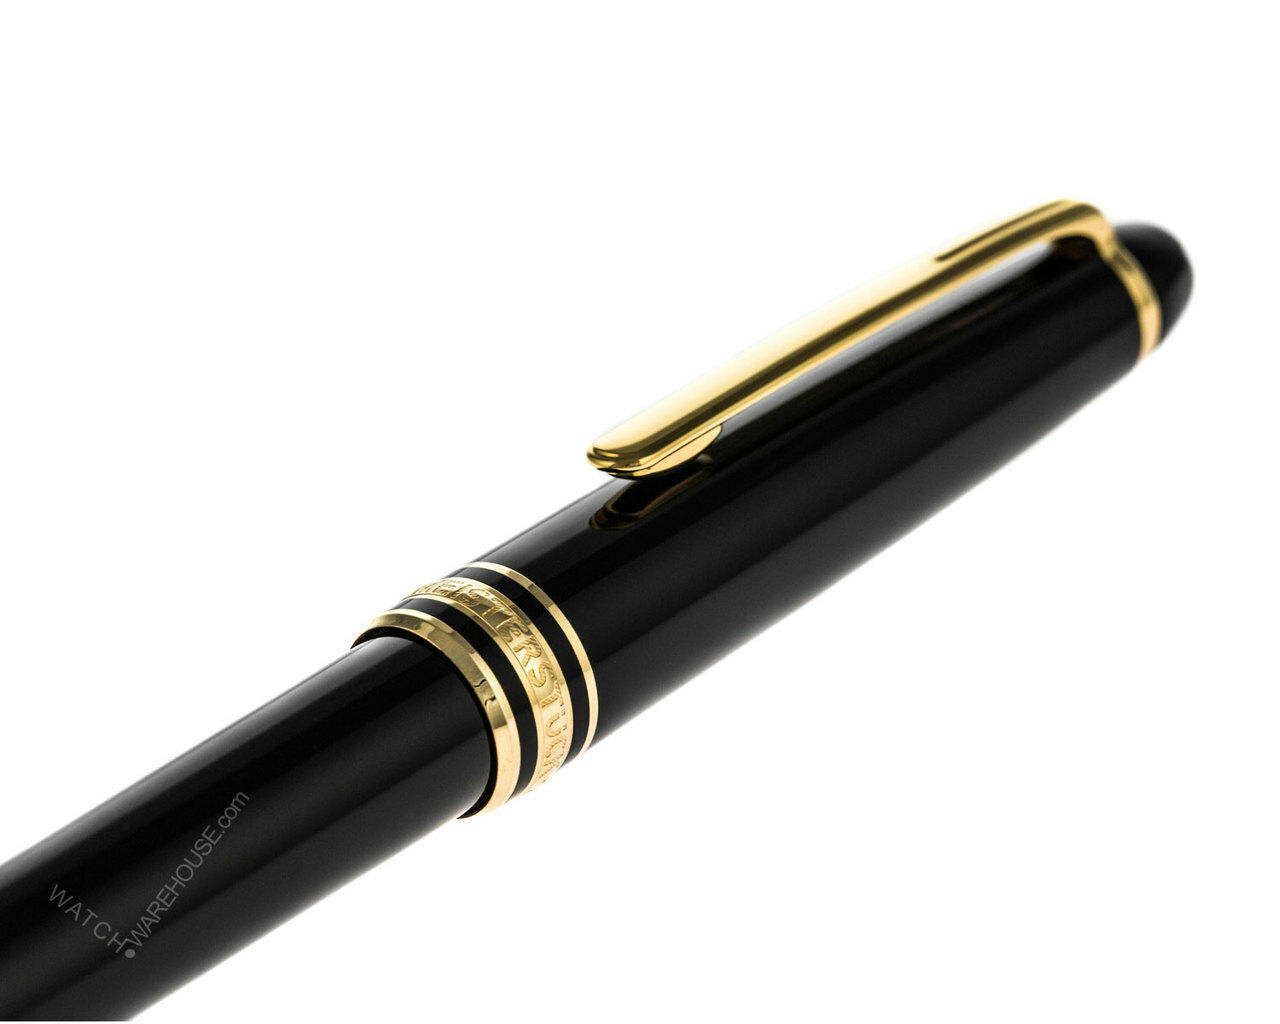 Hamilton Designer Montblanc Pens, Classic Writing Instruments & More